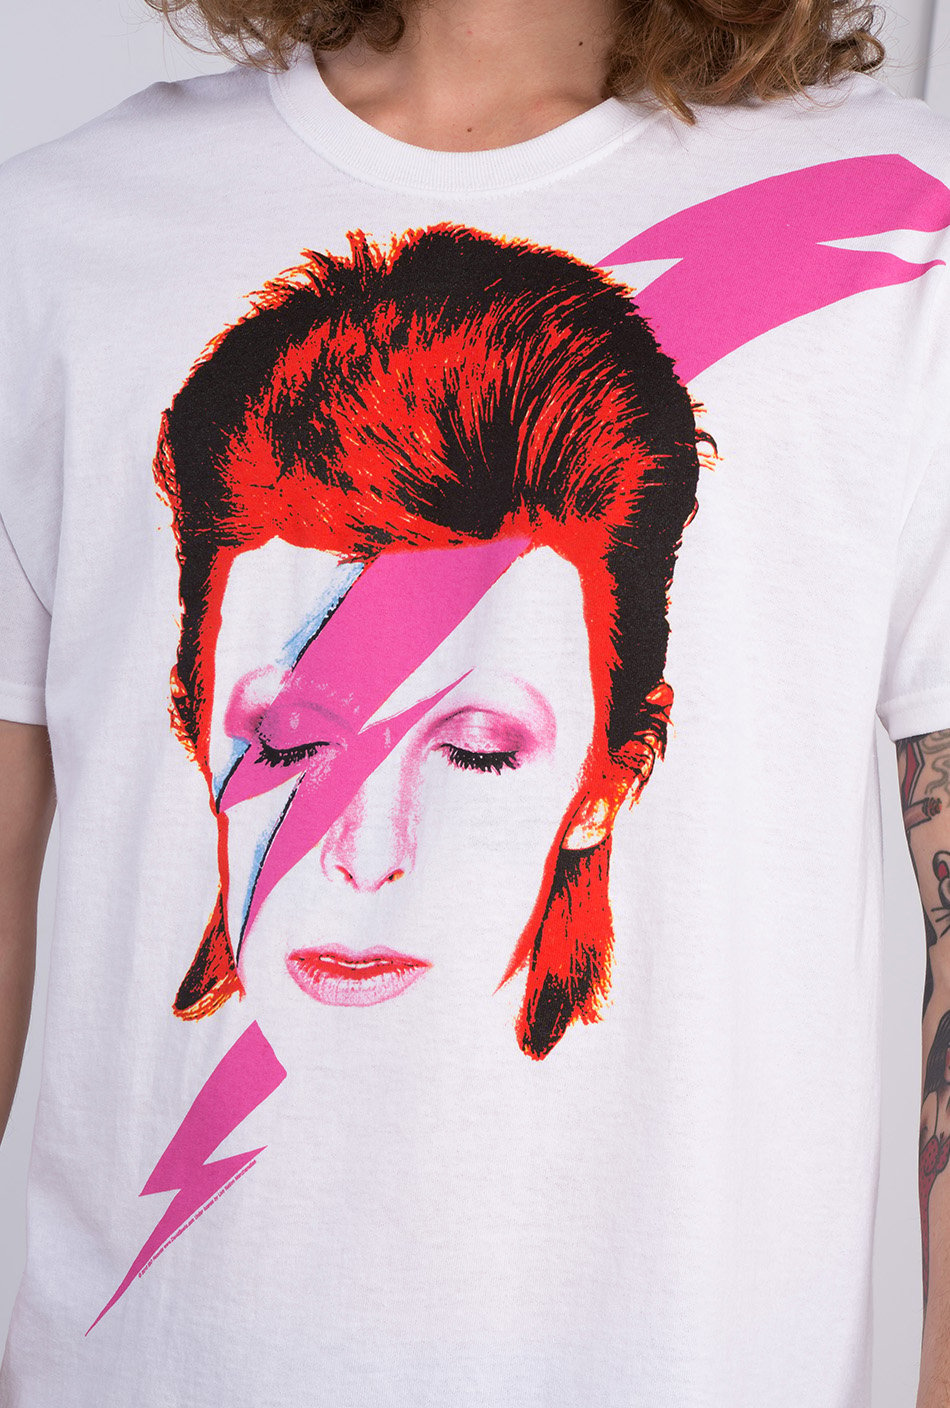 Camiseta David Bowie Aladdin Sane White